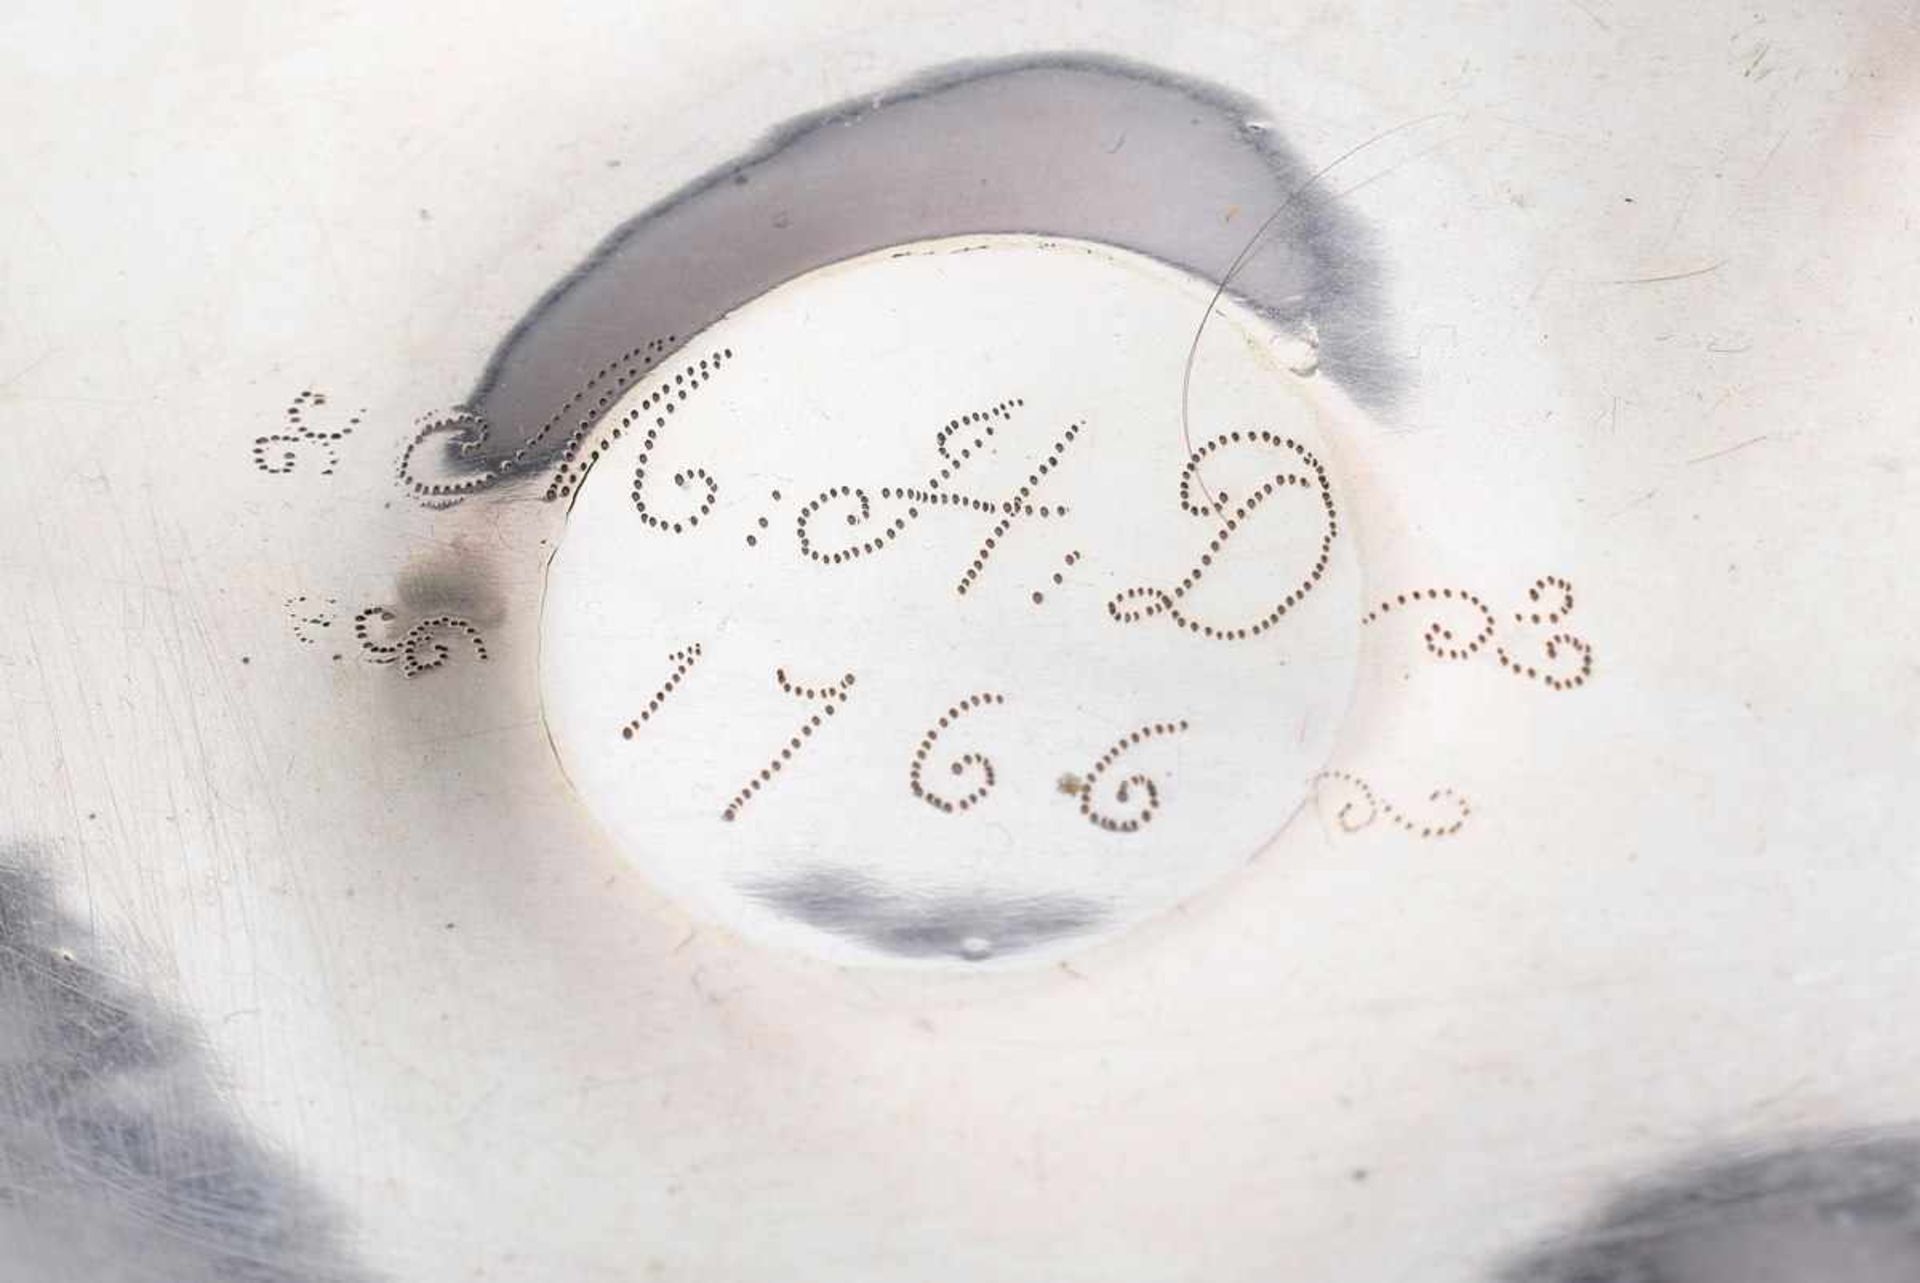 Passige ovale Tazza mit Gravurdekor und barockem punktiertem Dekor "MHD 1766", Silber ungepunzt, - Image 3 of 4